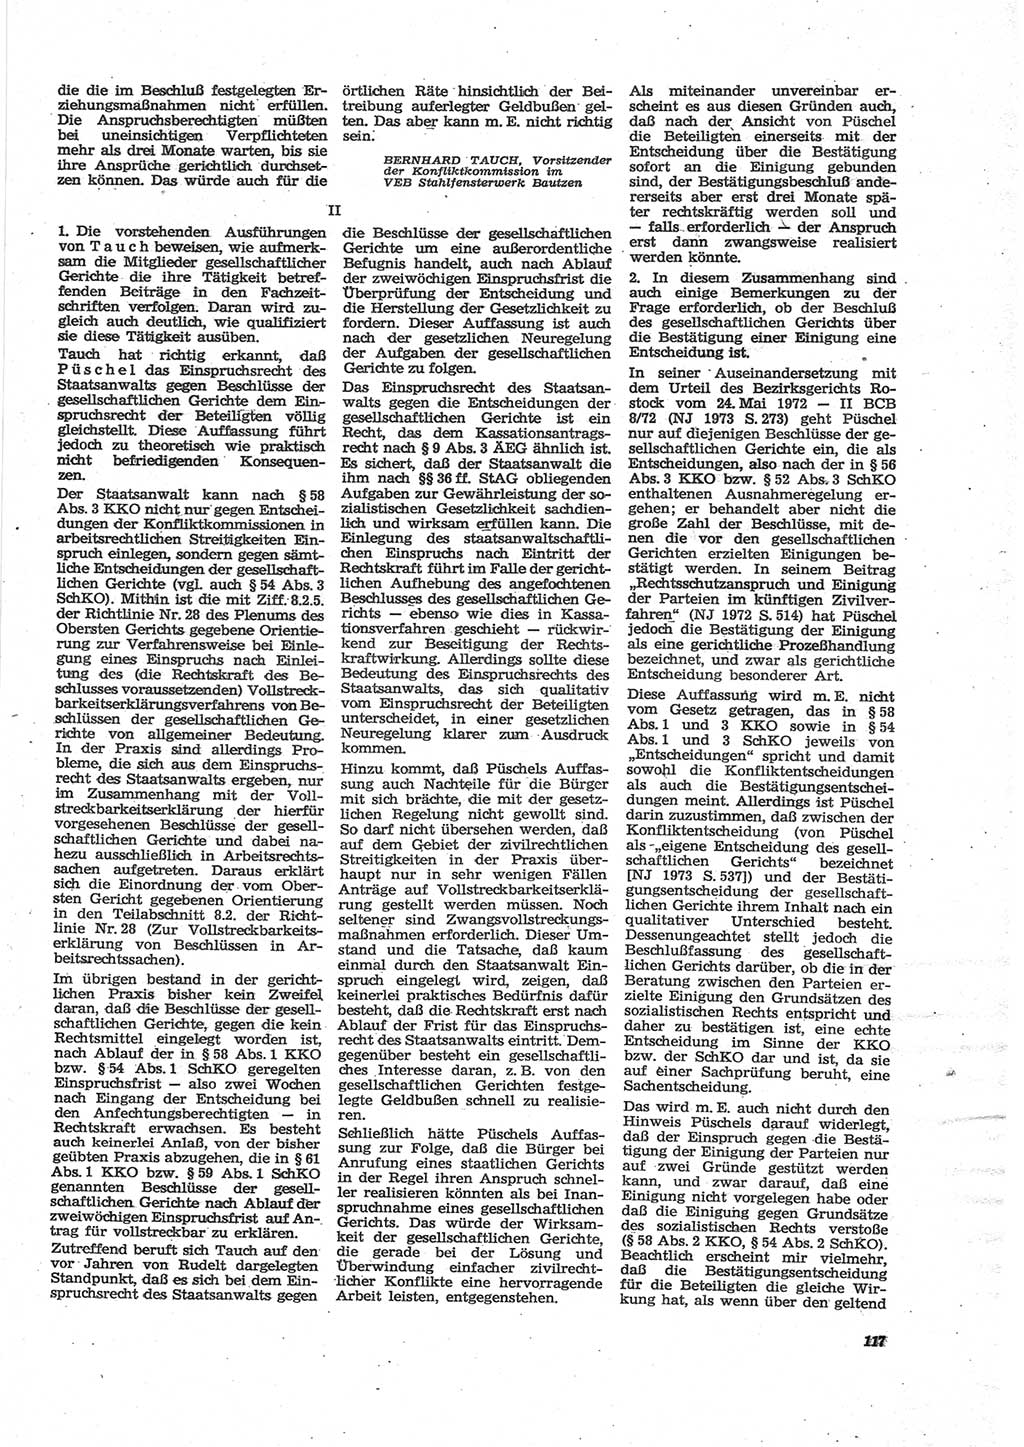 Neue Justiz (NJ), Zeitschrift für Recht und Rechtswissenschaft [Deutsche Demokratische Republik (DDR)], 28. Jahrgang 1974, Seite 117 (NJ DDR 1974, S. 117)